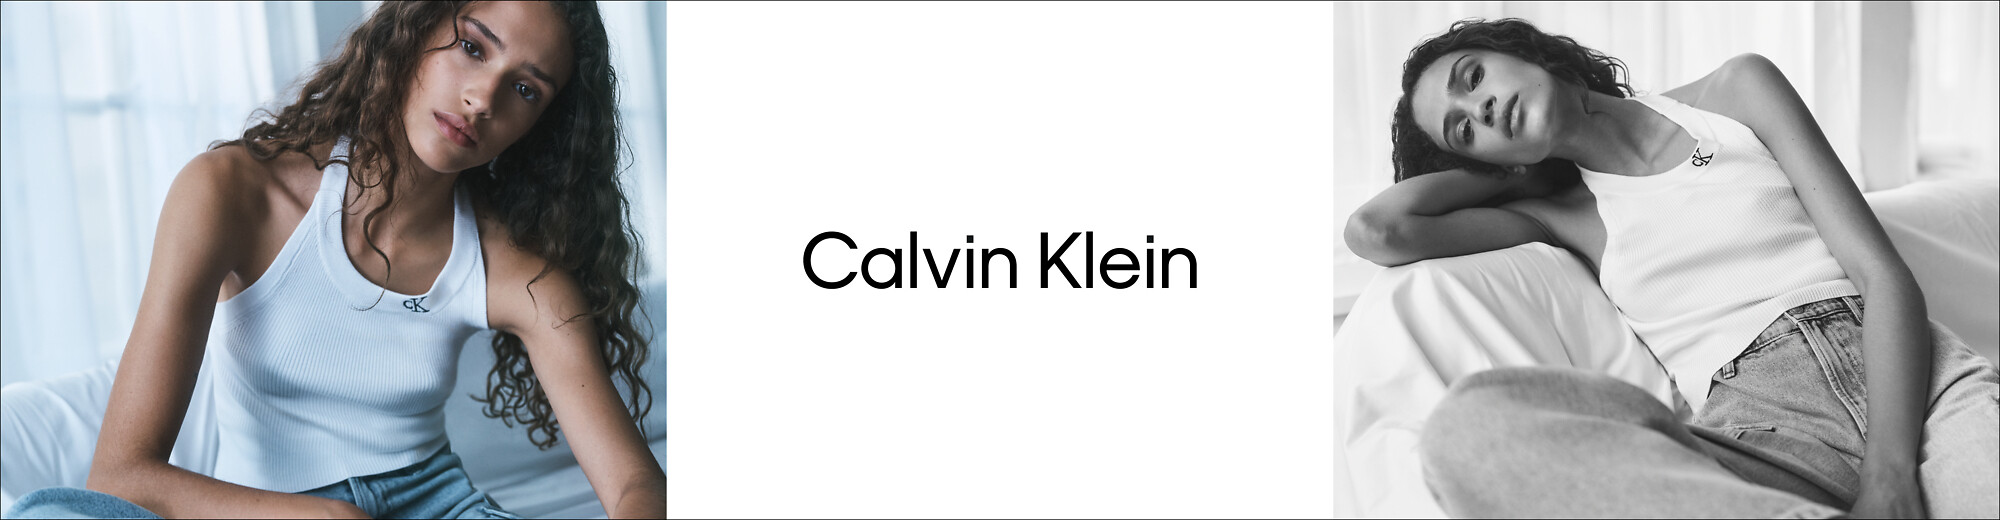 Ropa Mujer Blusas  Calvin Klein - Tienda en Línea